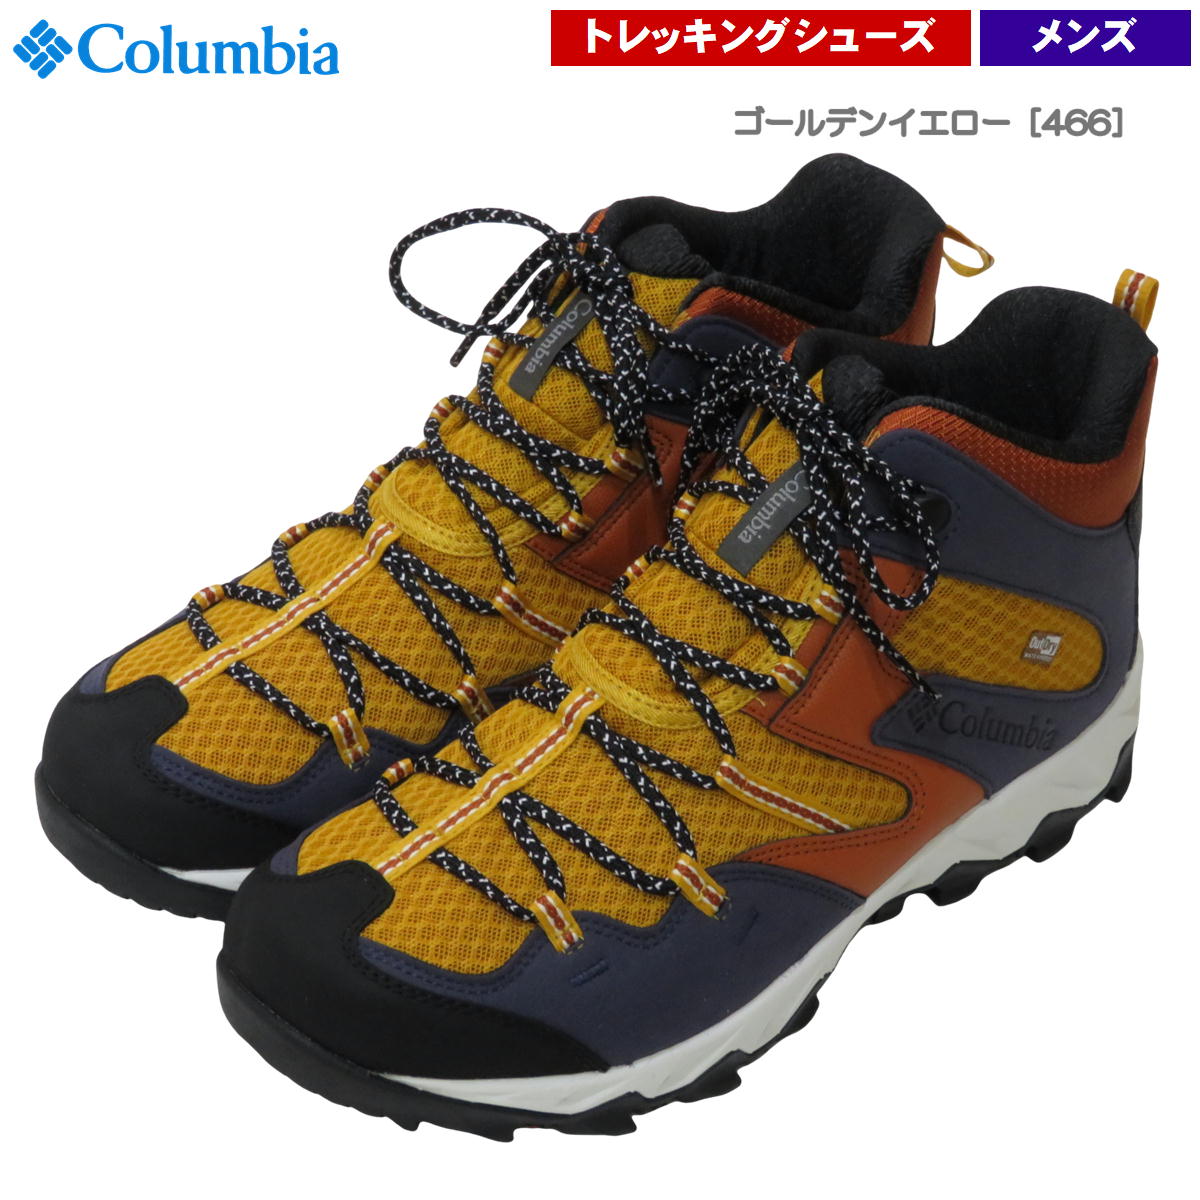 コロンビア / セイバー 4 ミッド メンズ ・ 防水 男性 登山 トレッキング ハイキング ブランド おしゃれ アウトドア Columbia